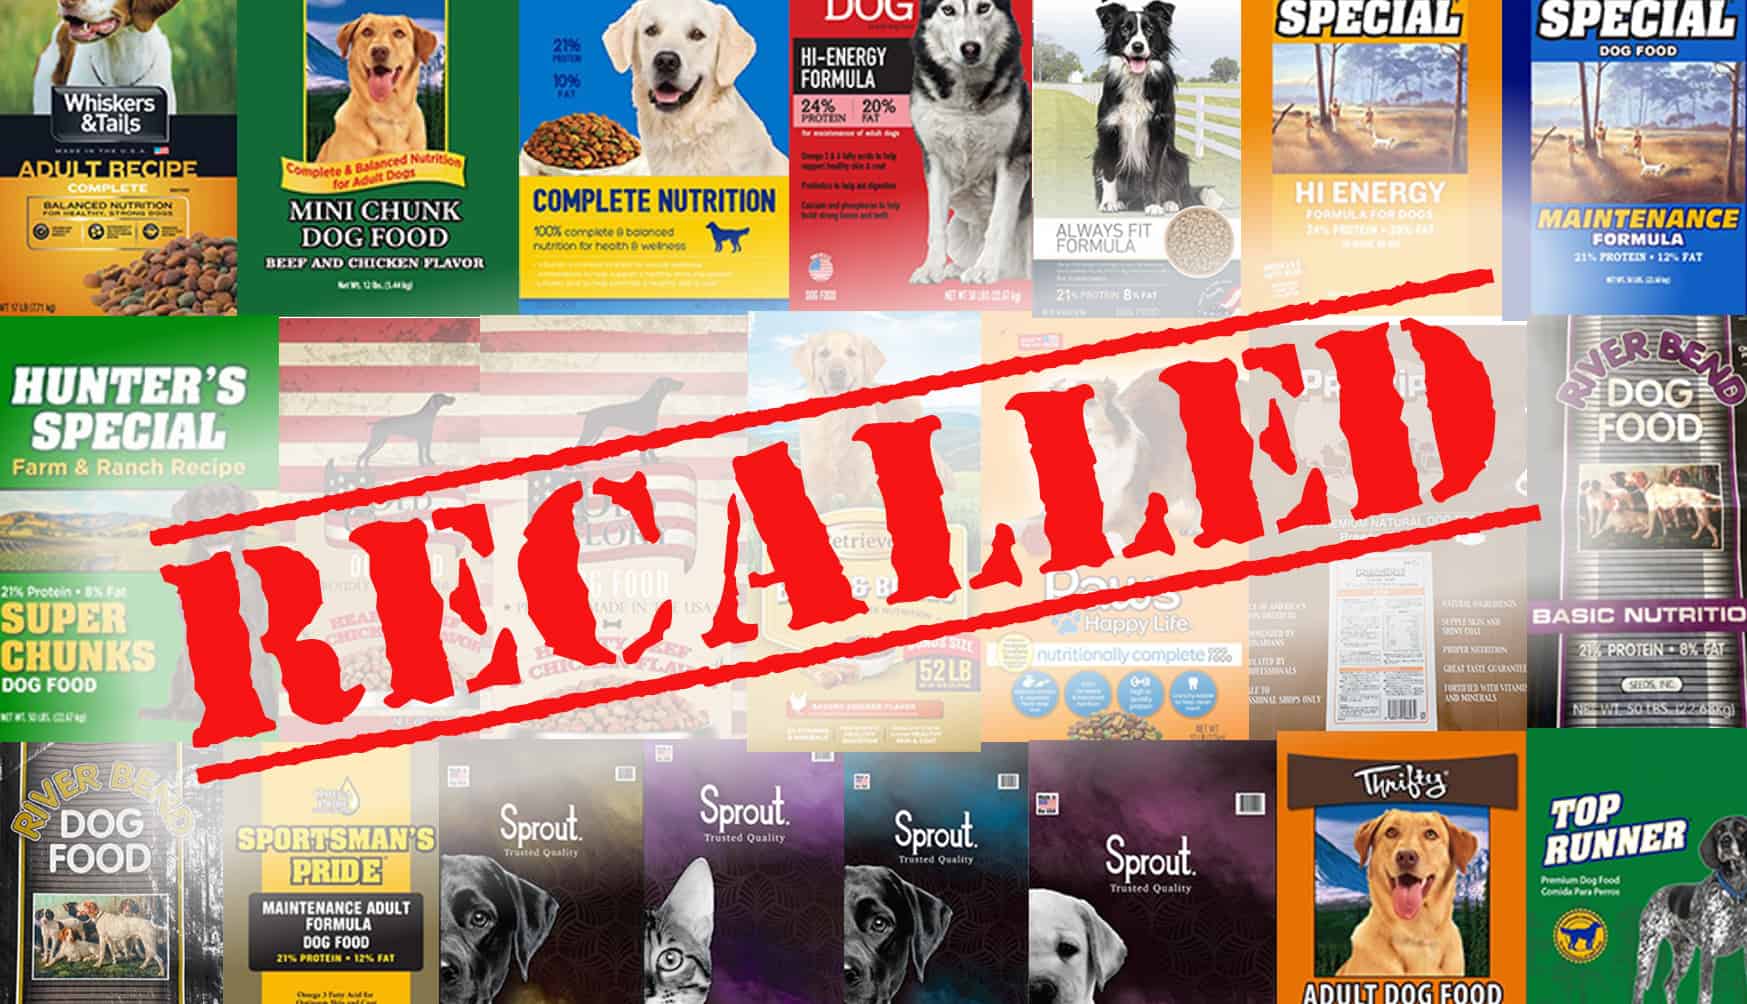 RECALL ALERT: 21 Pet Foods Across Multiple Brands Recalled over